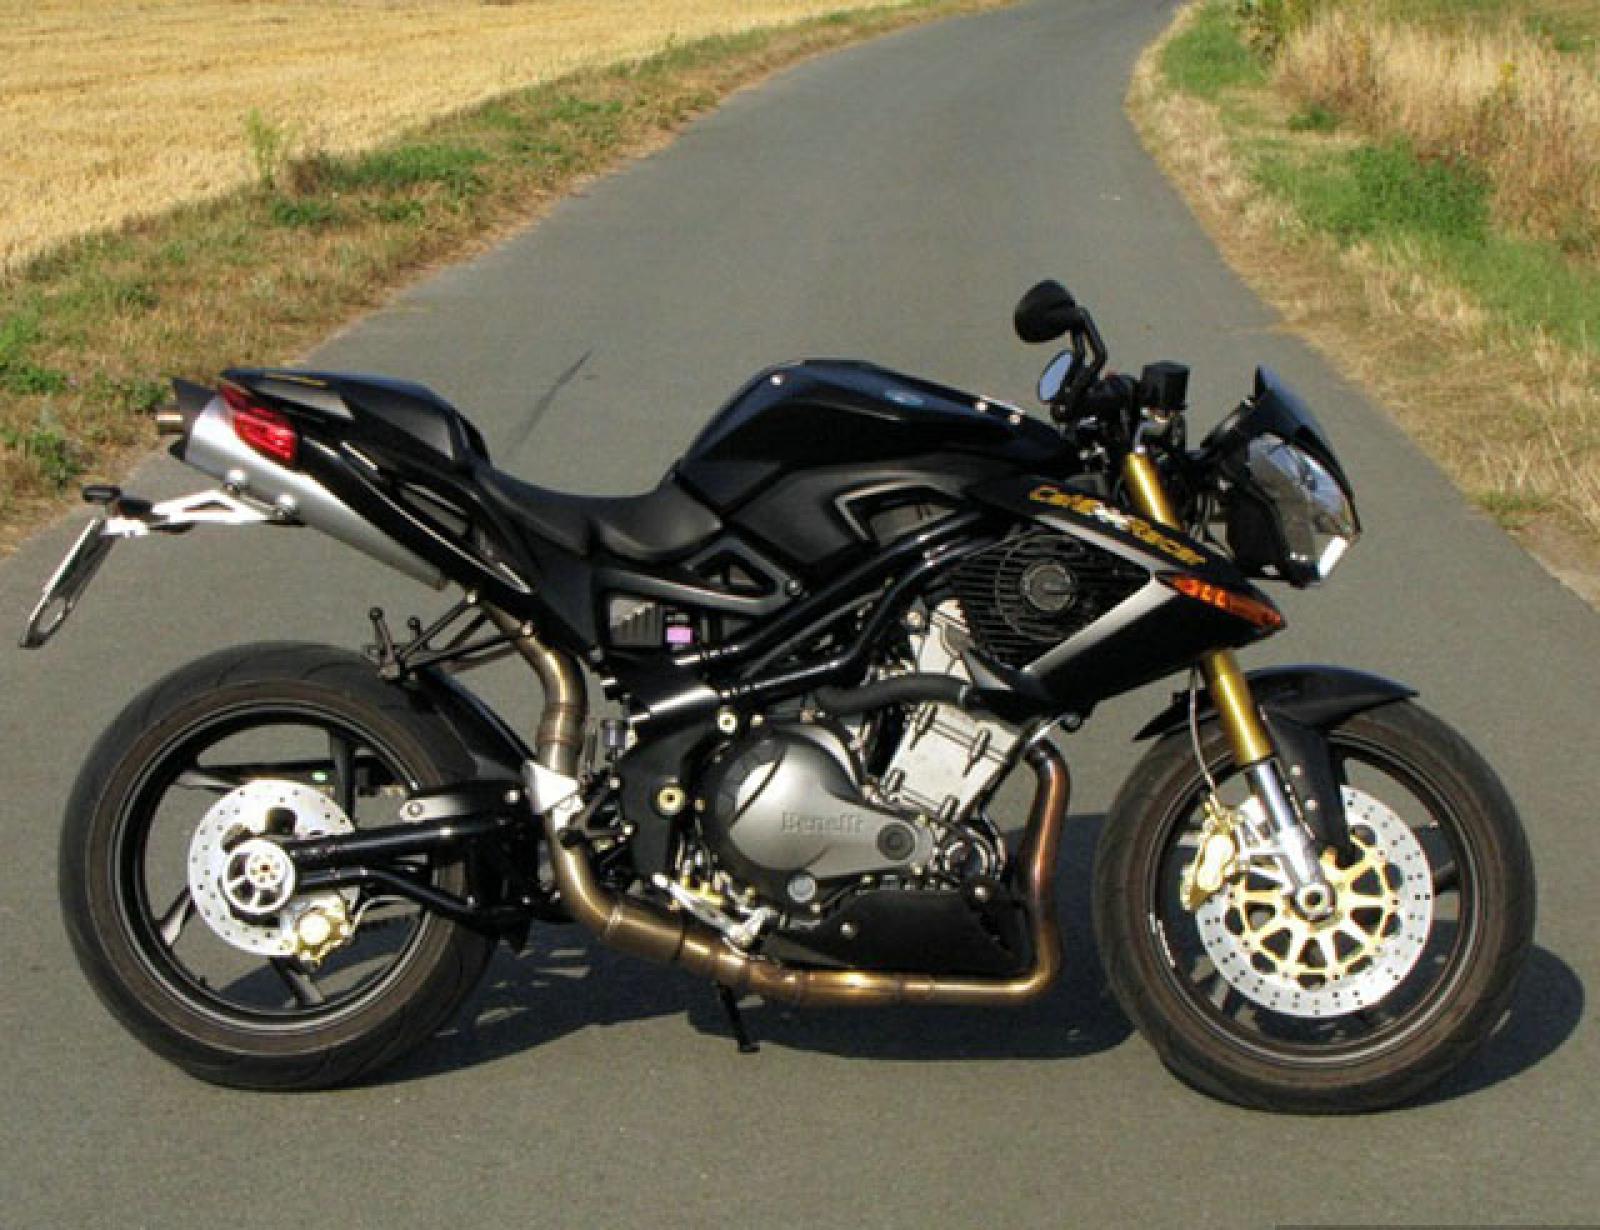 Мотоцикл benelli leoncino 800 2021 фото, характеристики, обзор, сравнение на базамото